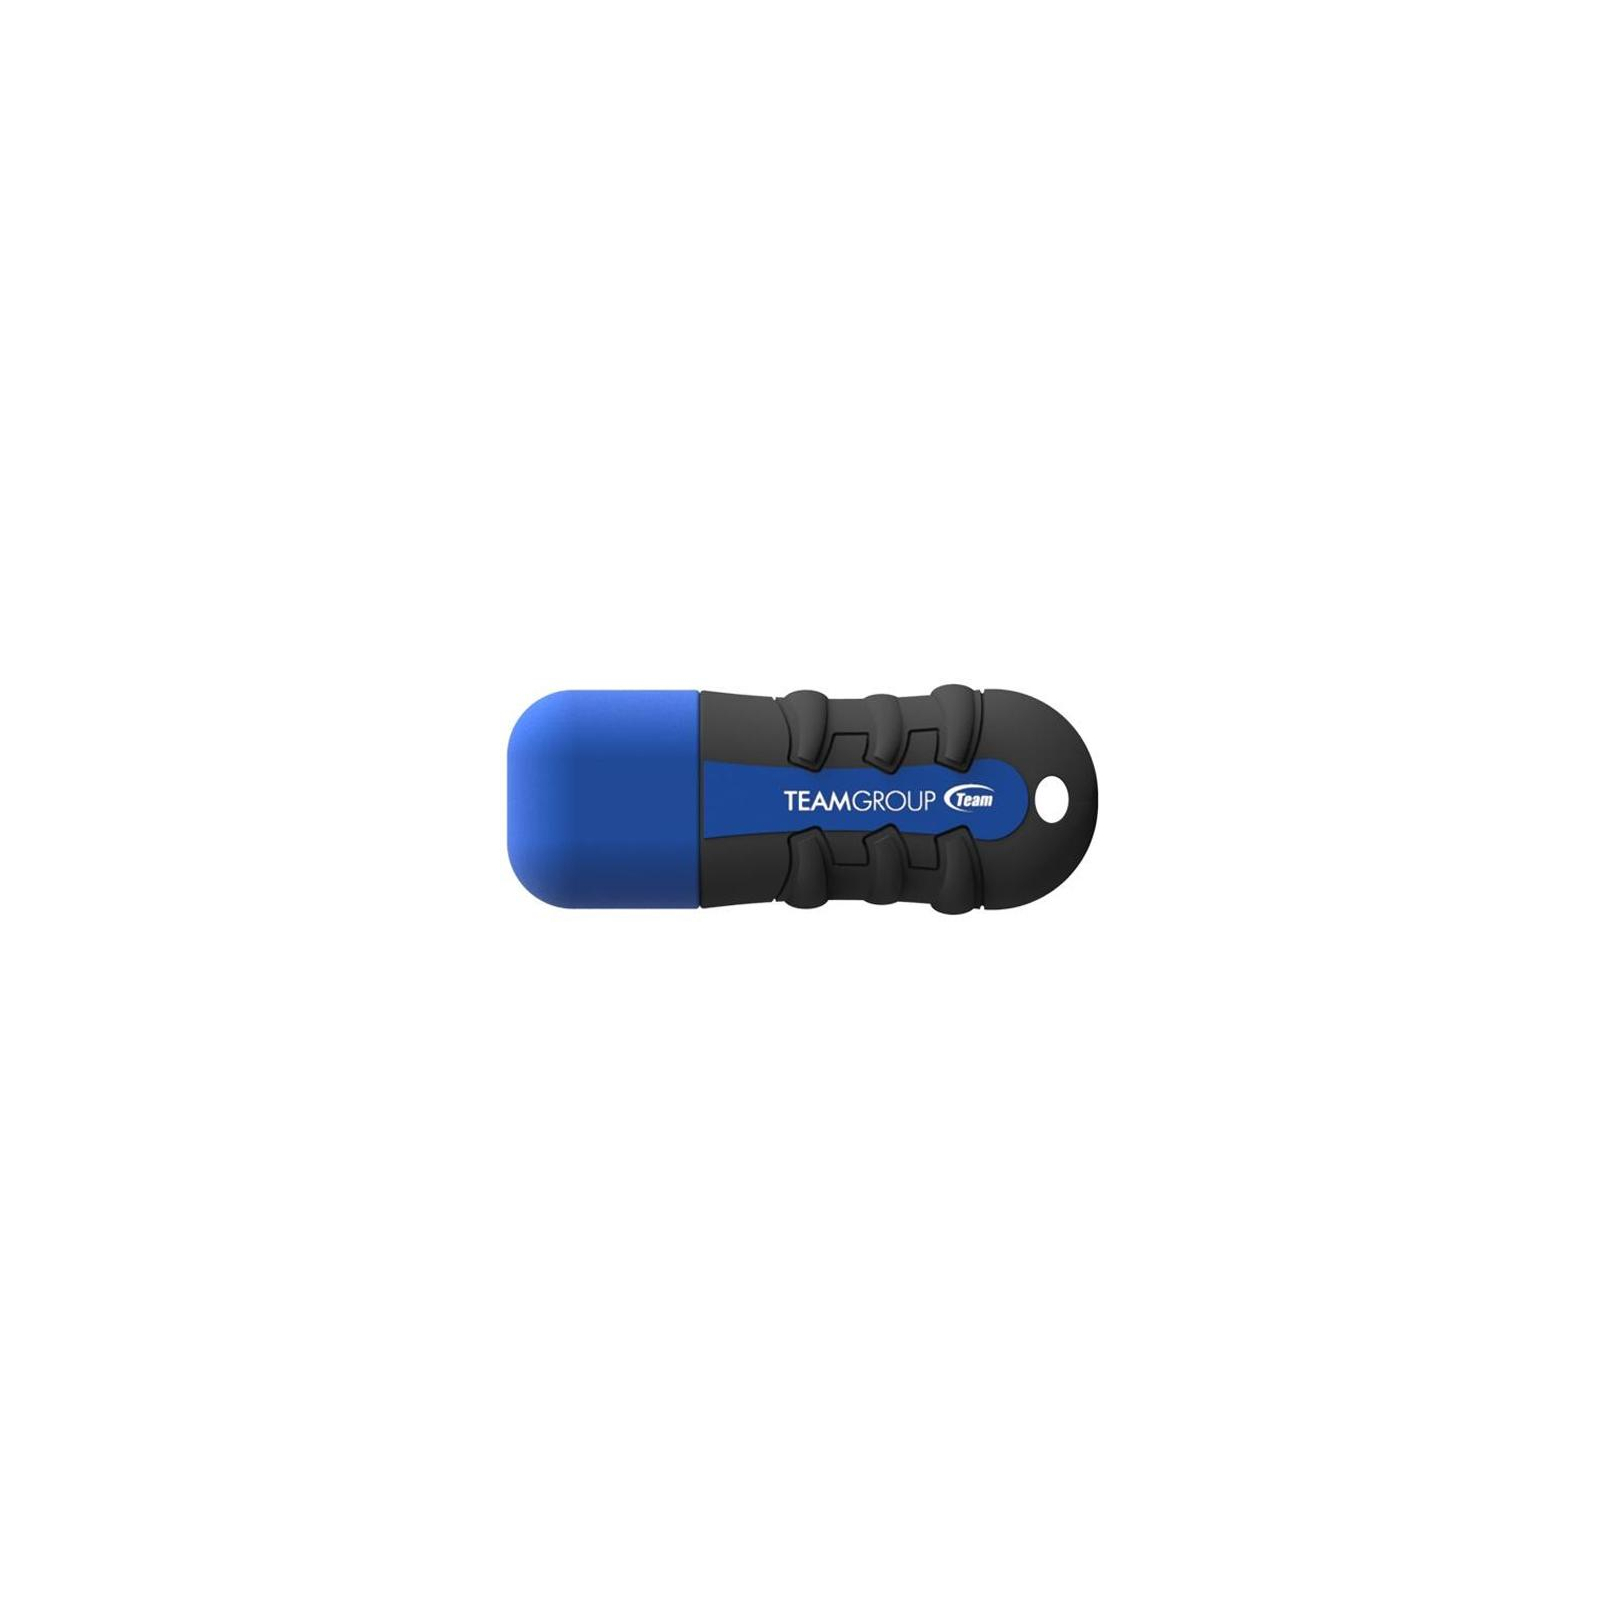 USB флеш накопитель Team 16GB T181 Blue USB 2.0 (TT18116GC01)